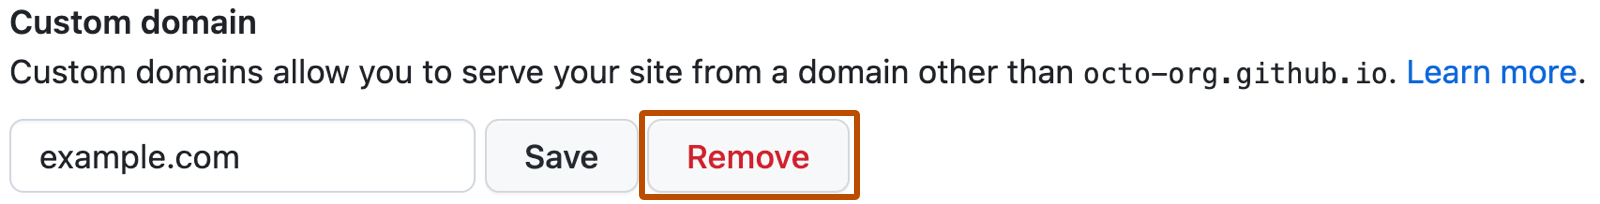 Botón de guardar dominio personalizado